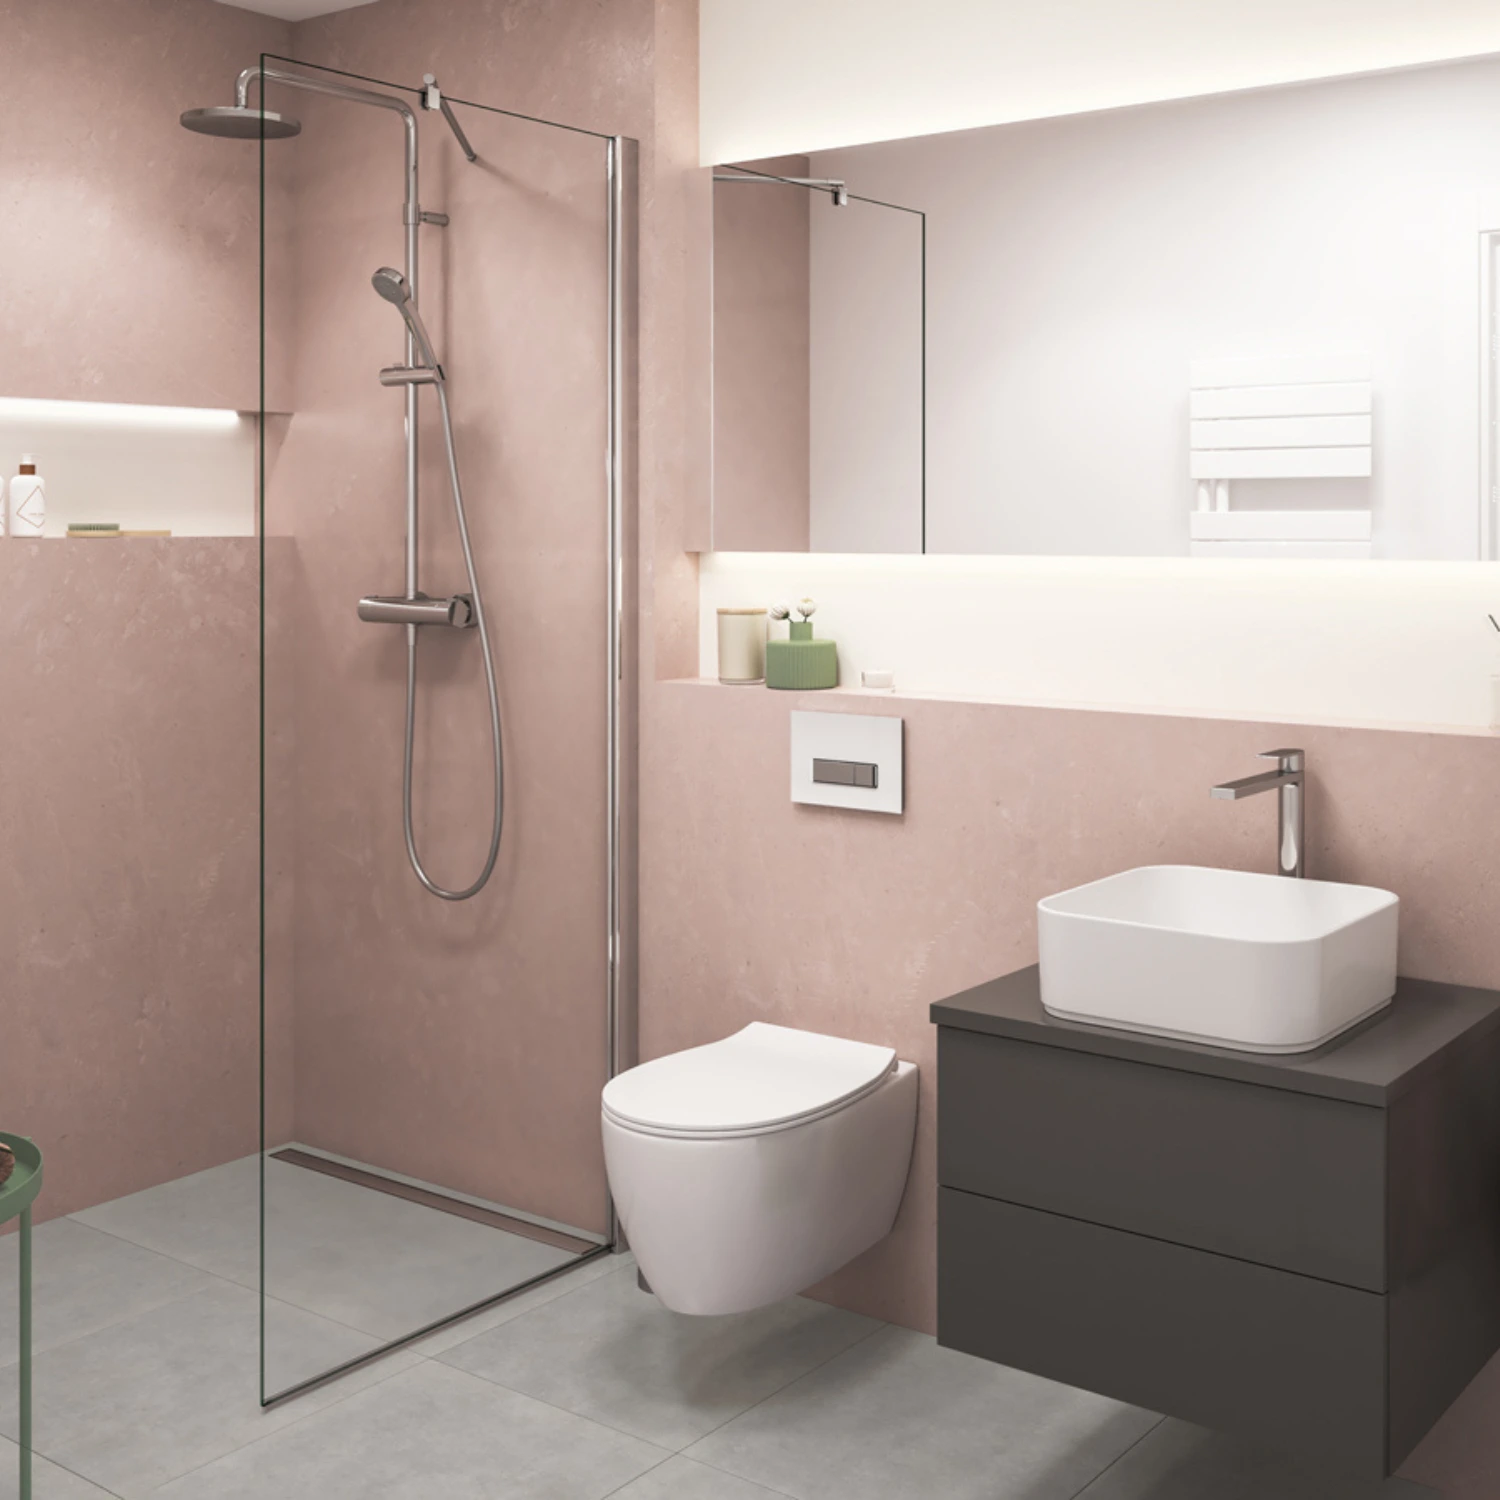 Helles Badezimmer in rosa und weiß